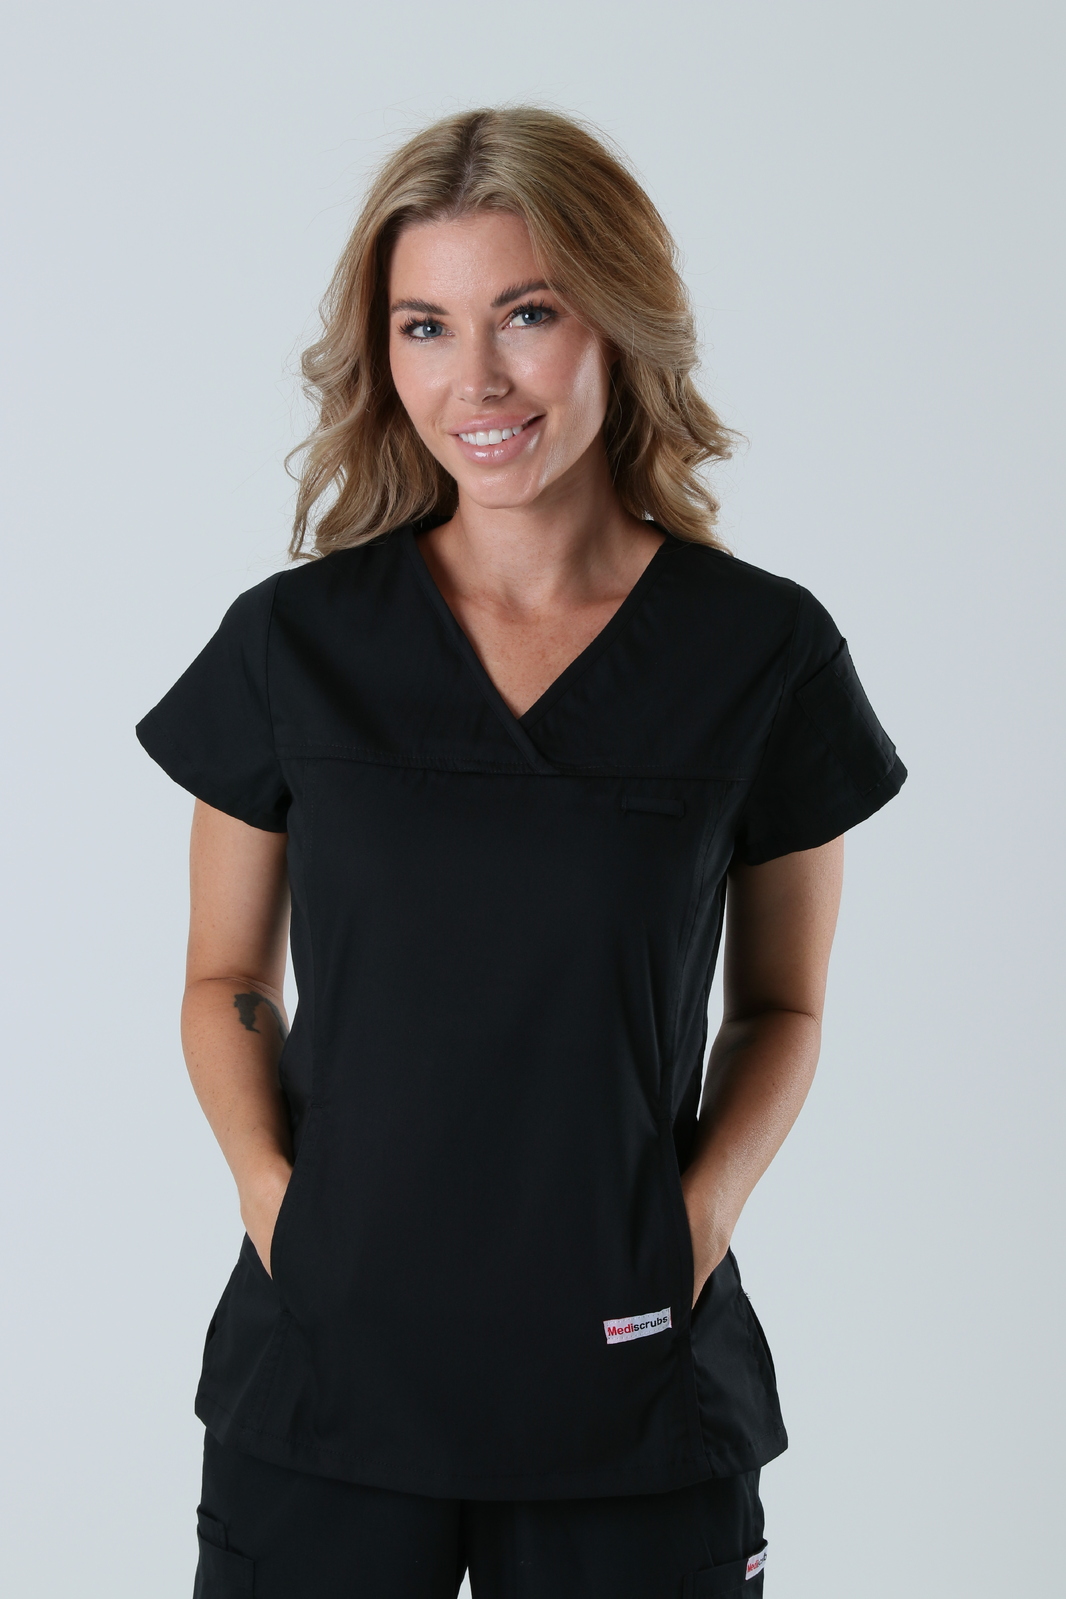 Queensland Children's Hospital Emergency Department Registrar Uniform Top Bundle  (Women's Fit Top in Black  incl Logos)